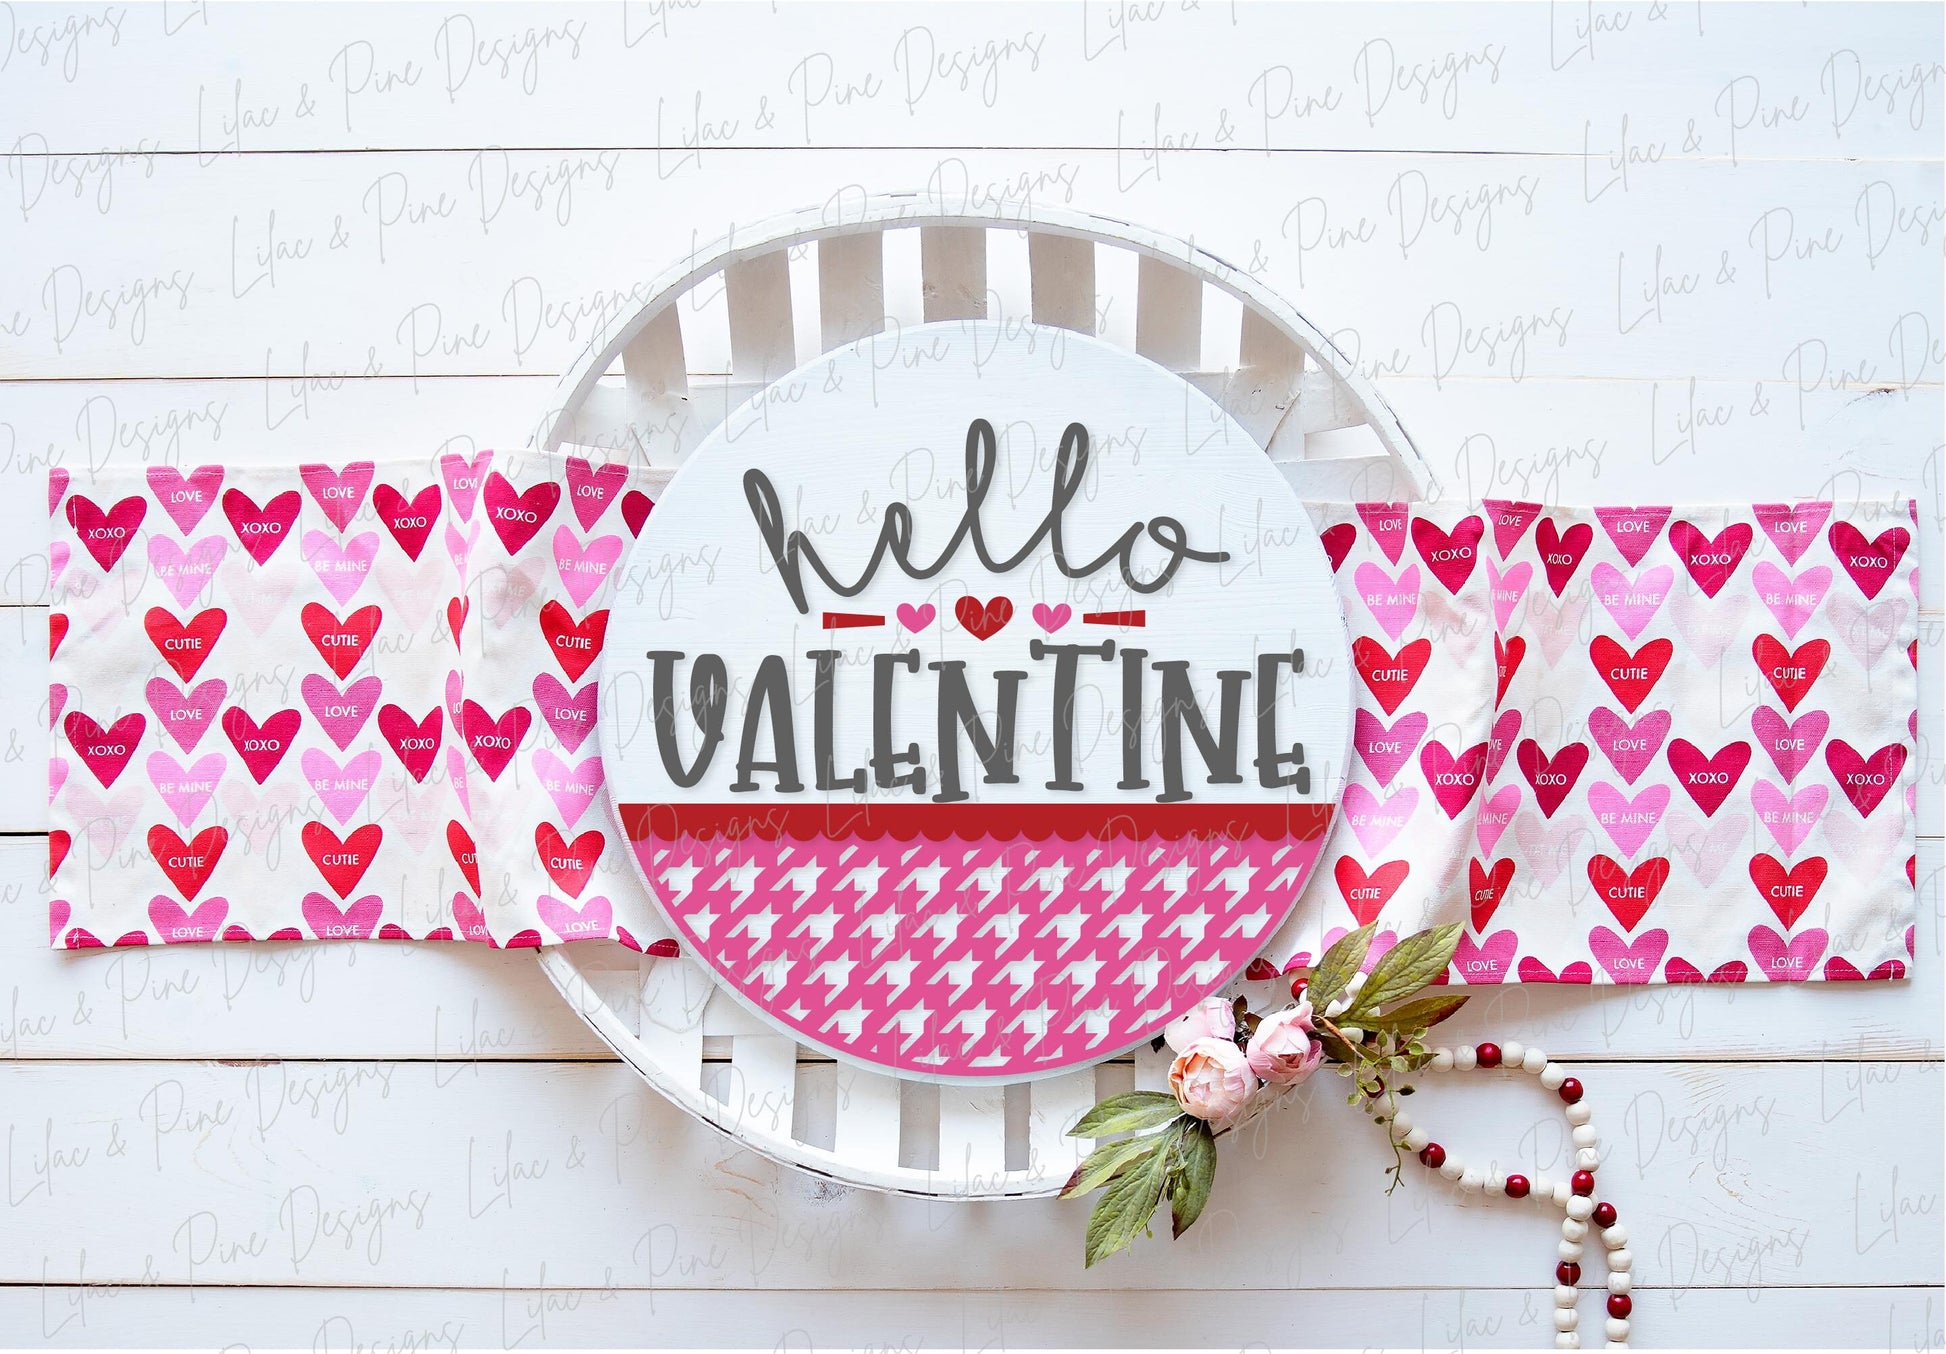 Hello Valentine sign SVG, Valentine door hanger, Valentines Welcome sign SVG, Valentines Day decor, Glowforge SVG, laser cut file